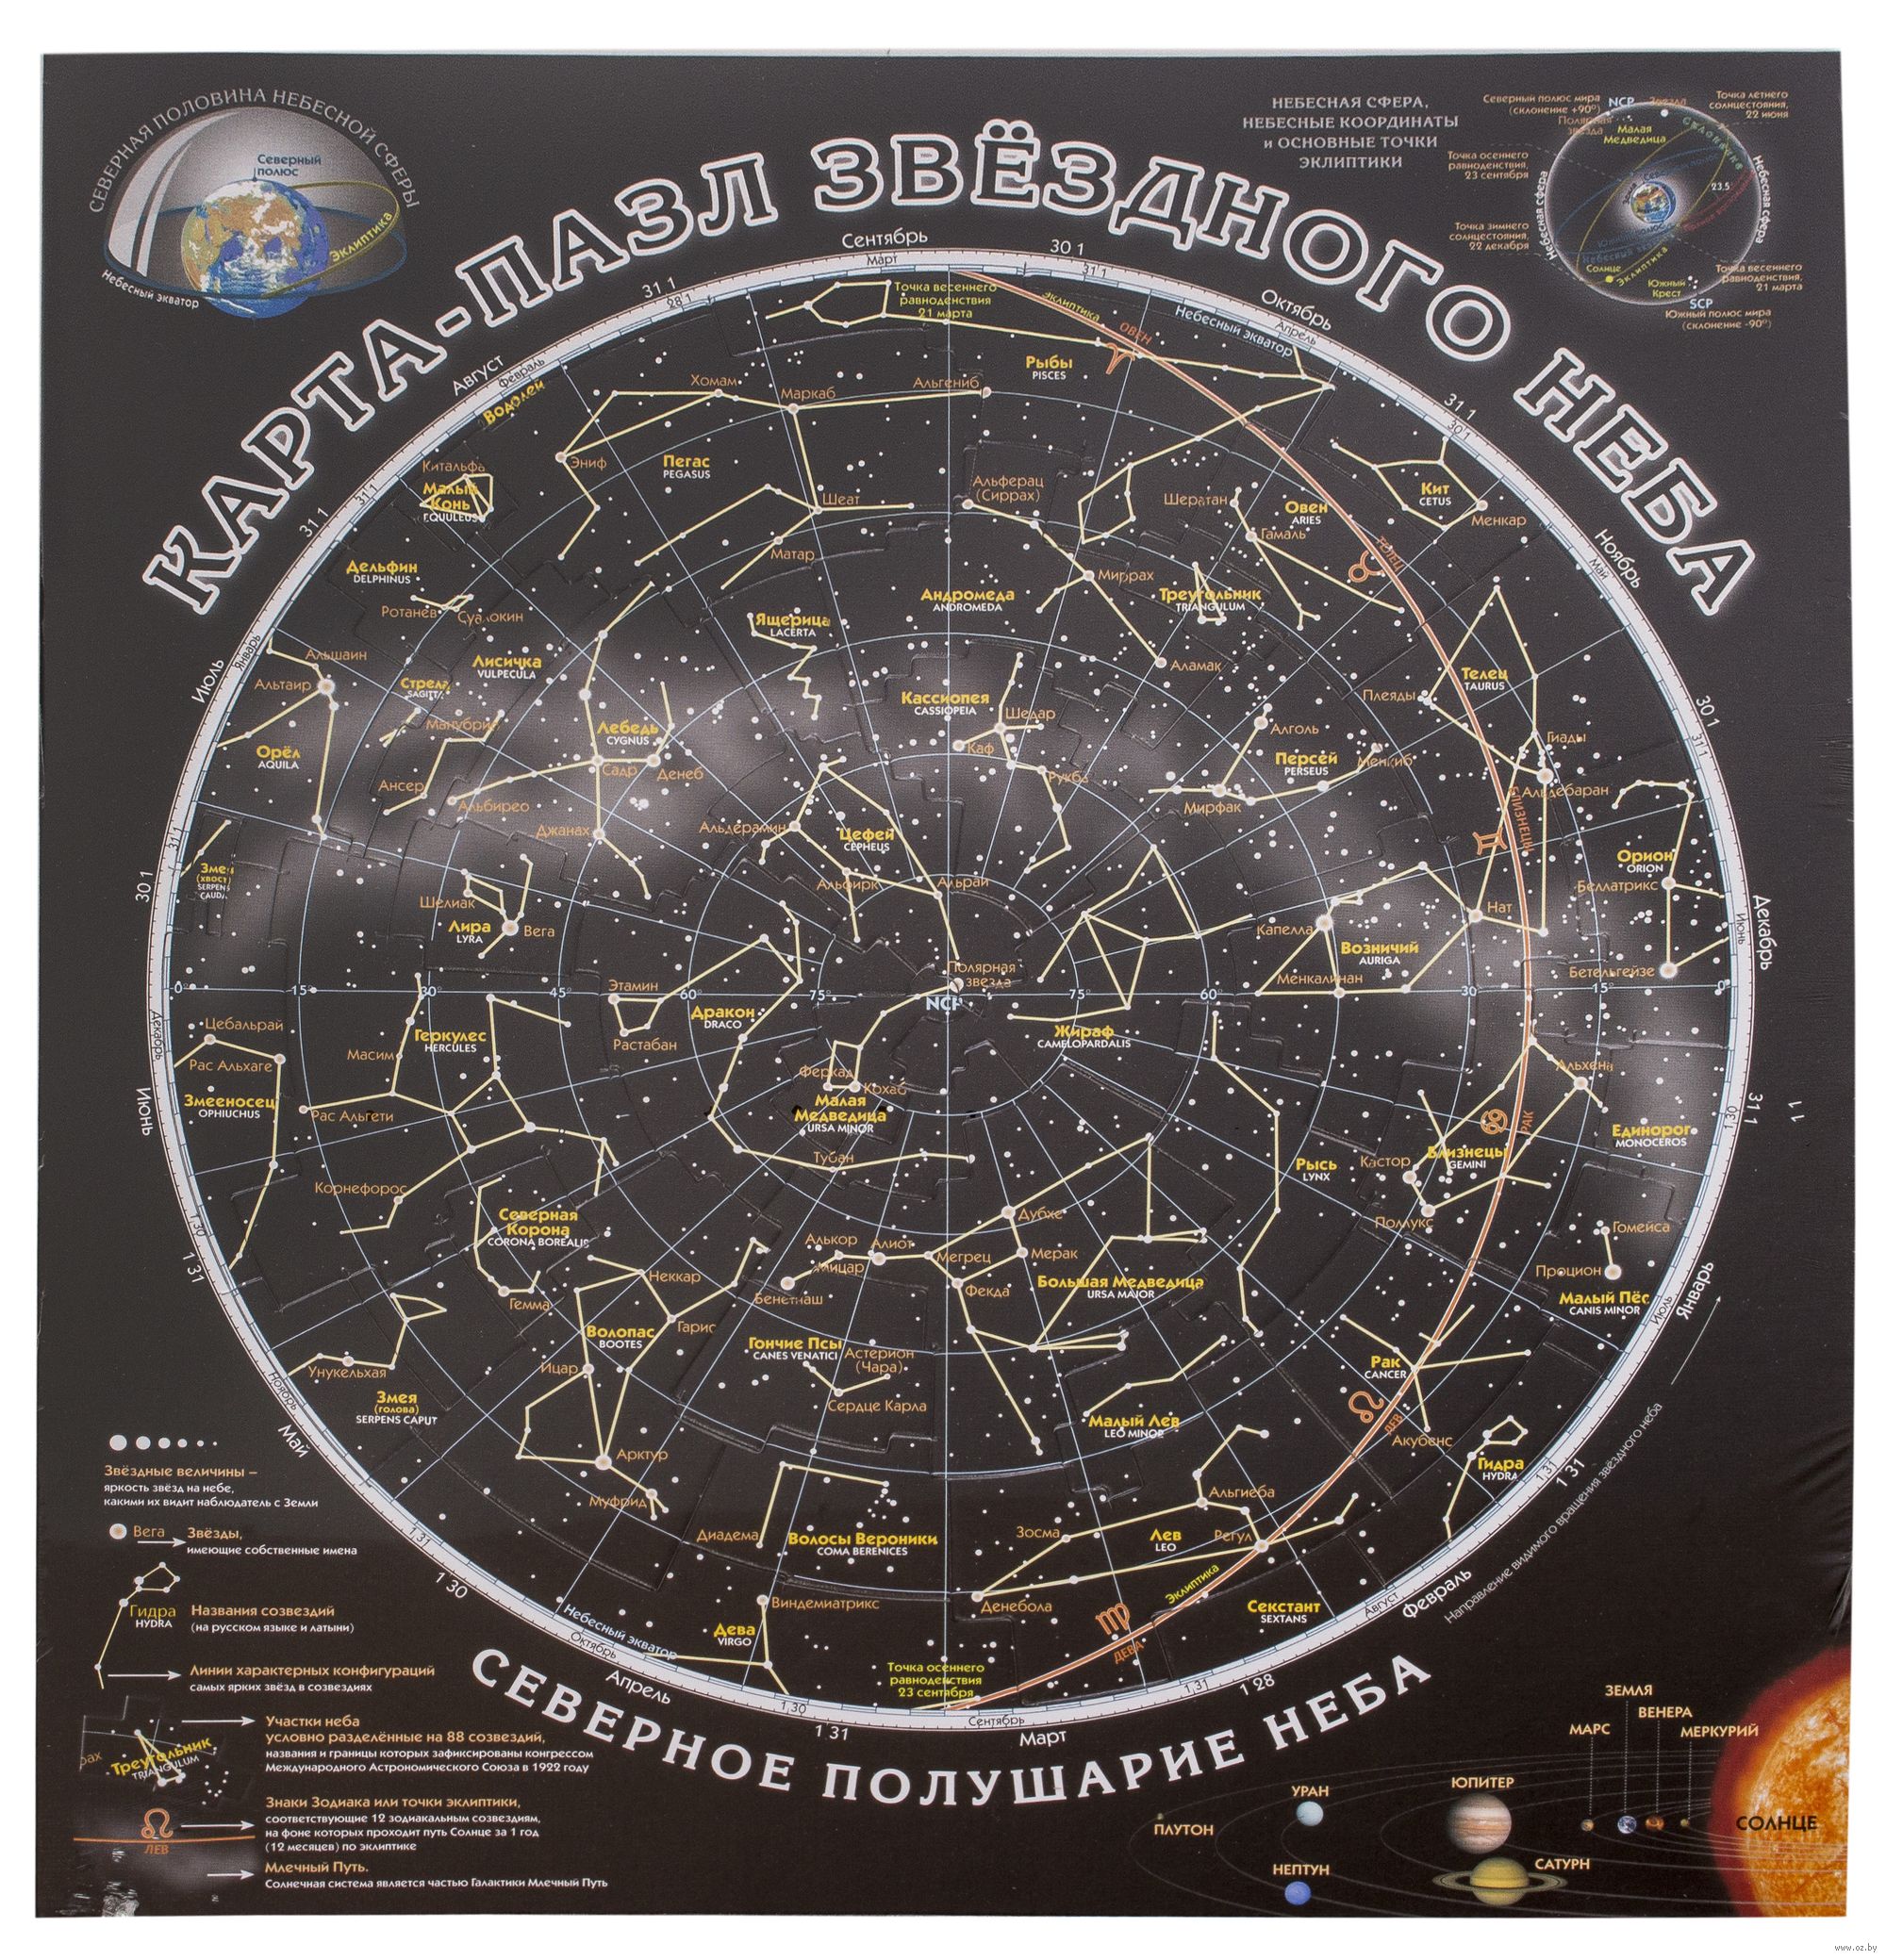 Античные созвездия. Пазл "карта звёздного неба". Карта звездного неба высокого разрешения. Светящаяся карта созвездий. Карта звёздного неба Северное полушарие.